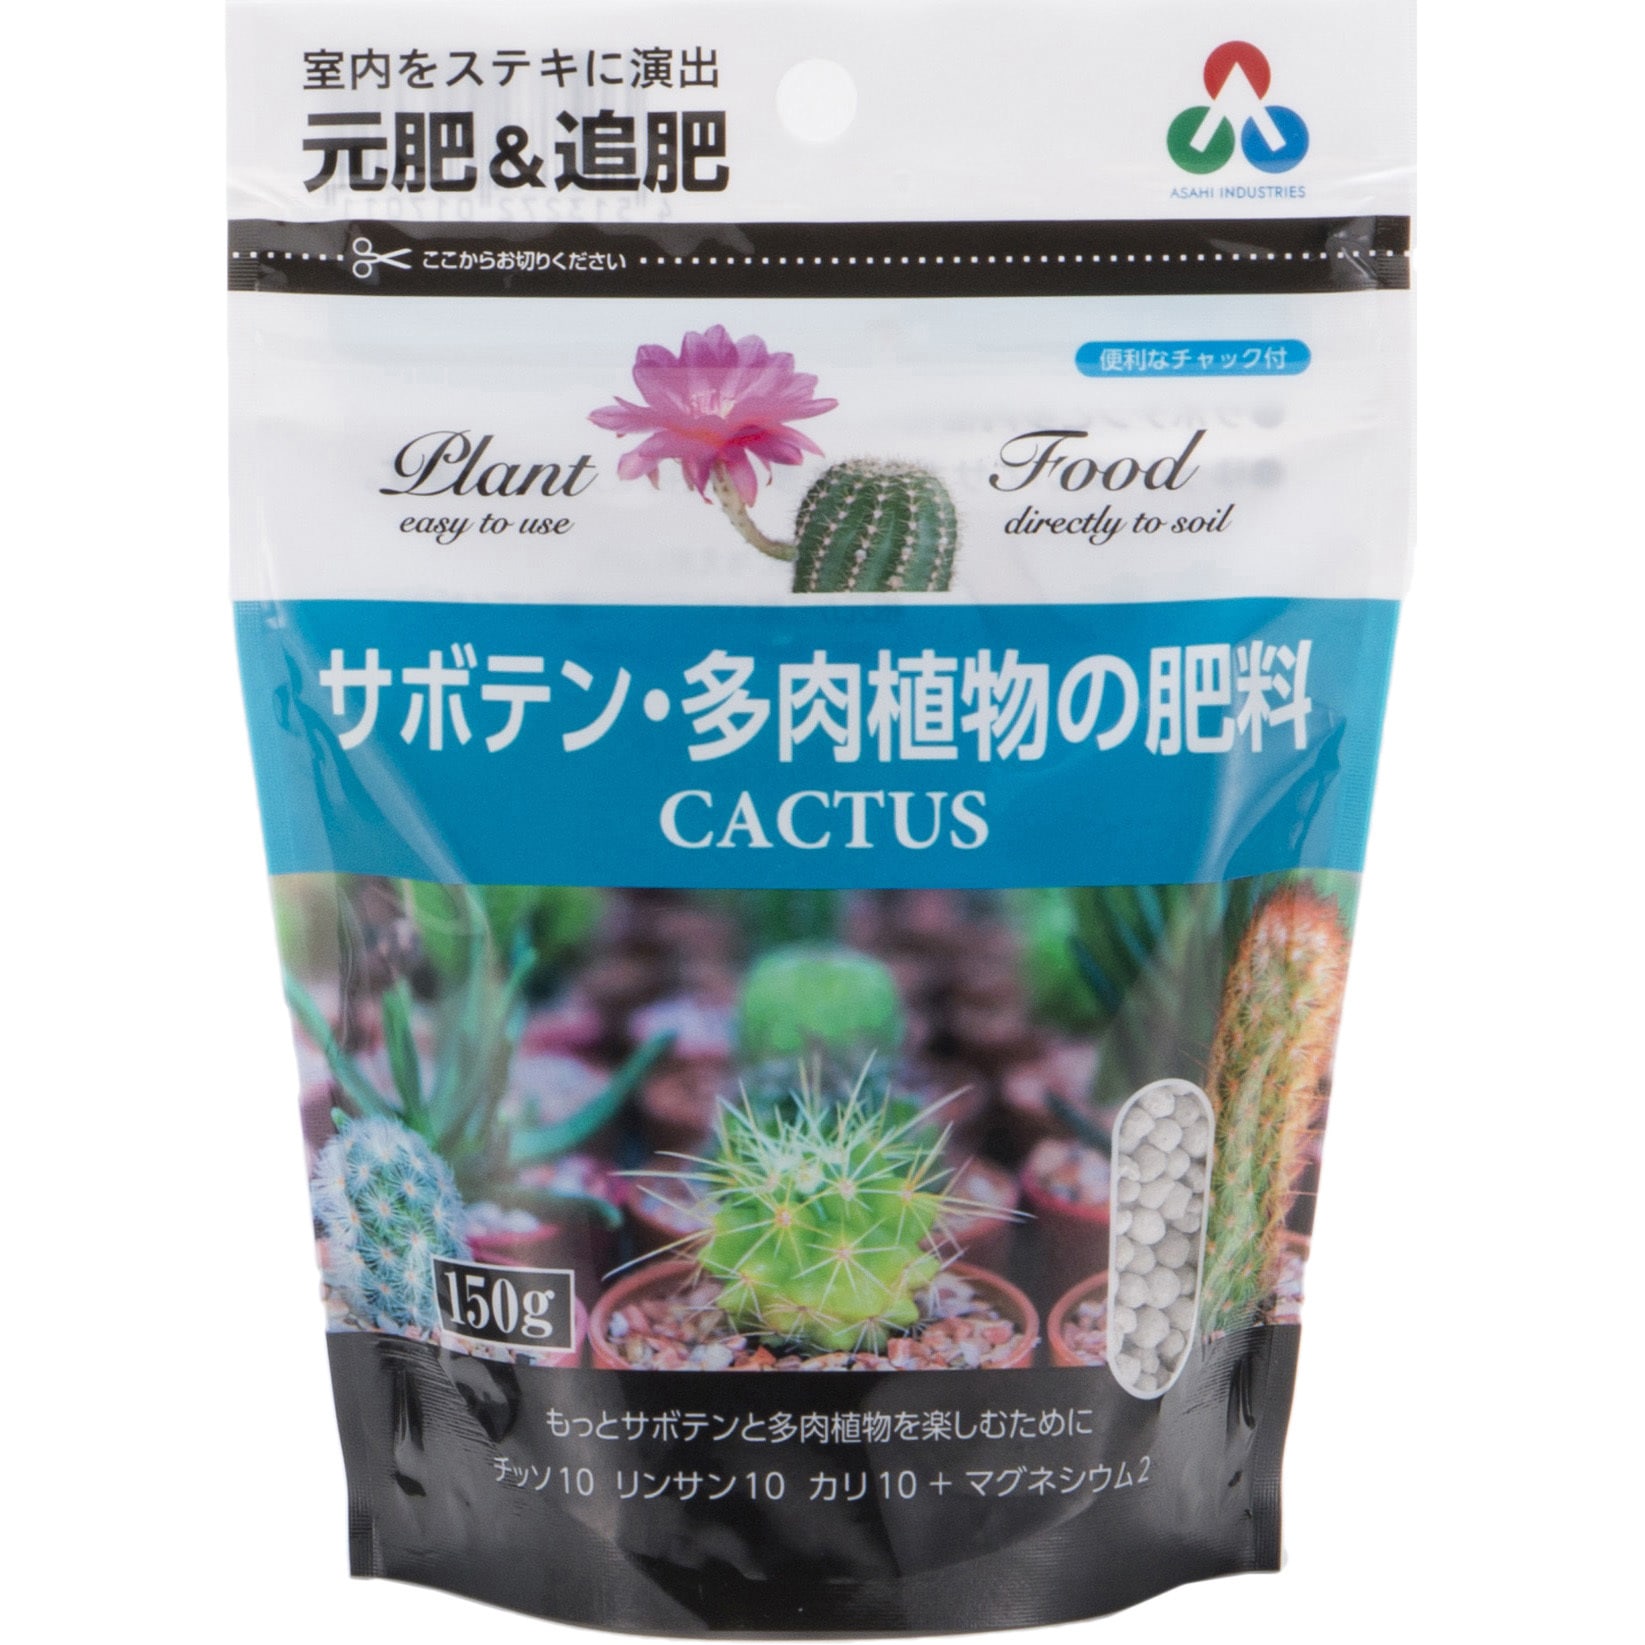 サボテン 多肉植物の肥料ミニ 朝日工業 1袋 150g 通販モノタロウ